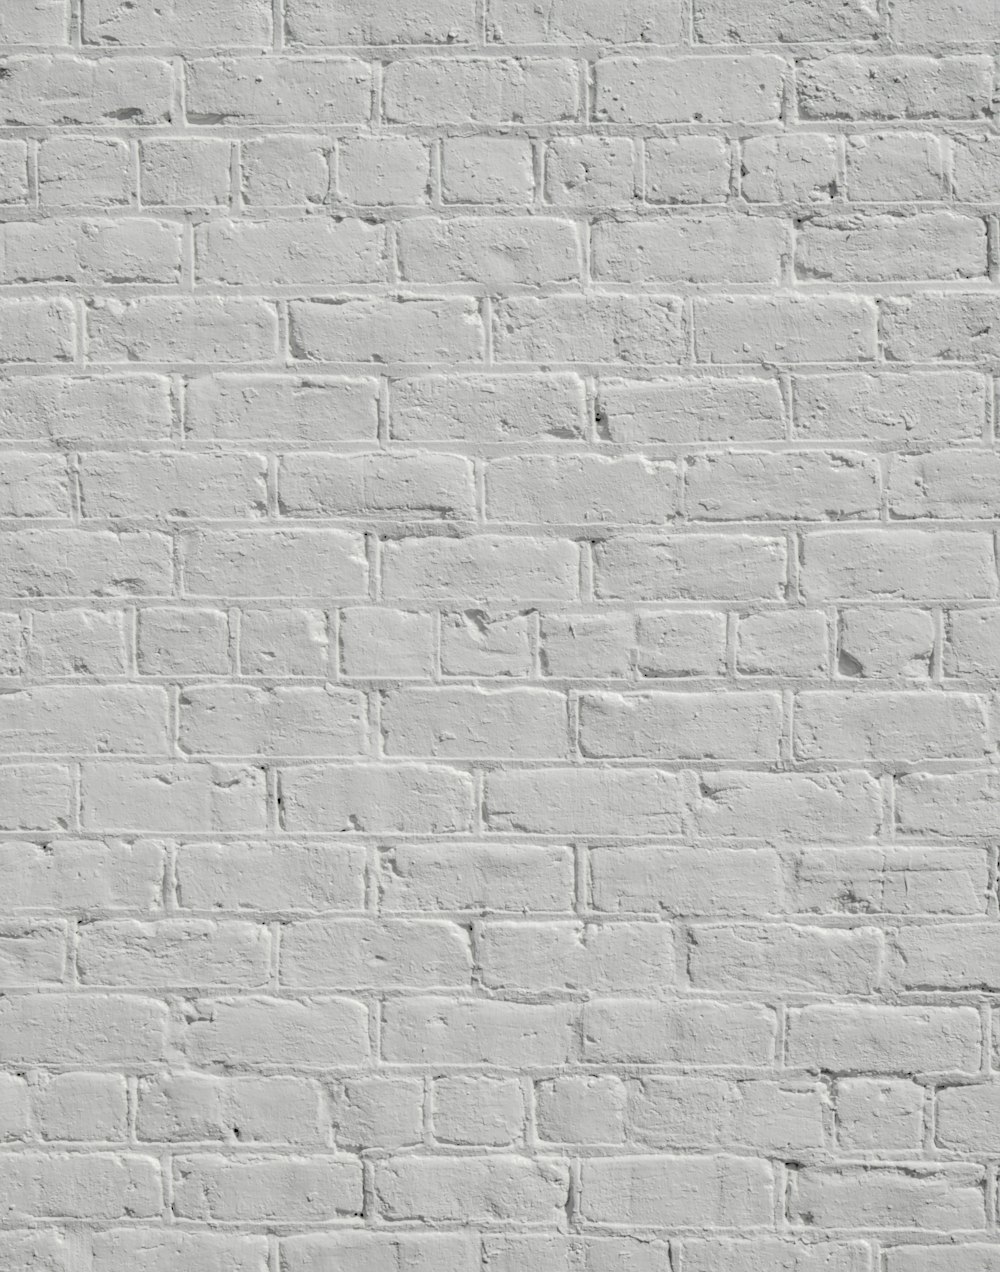 una pared de ladrillo blanco sin morteros ni morteros